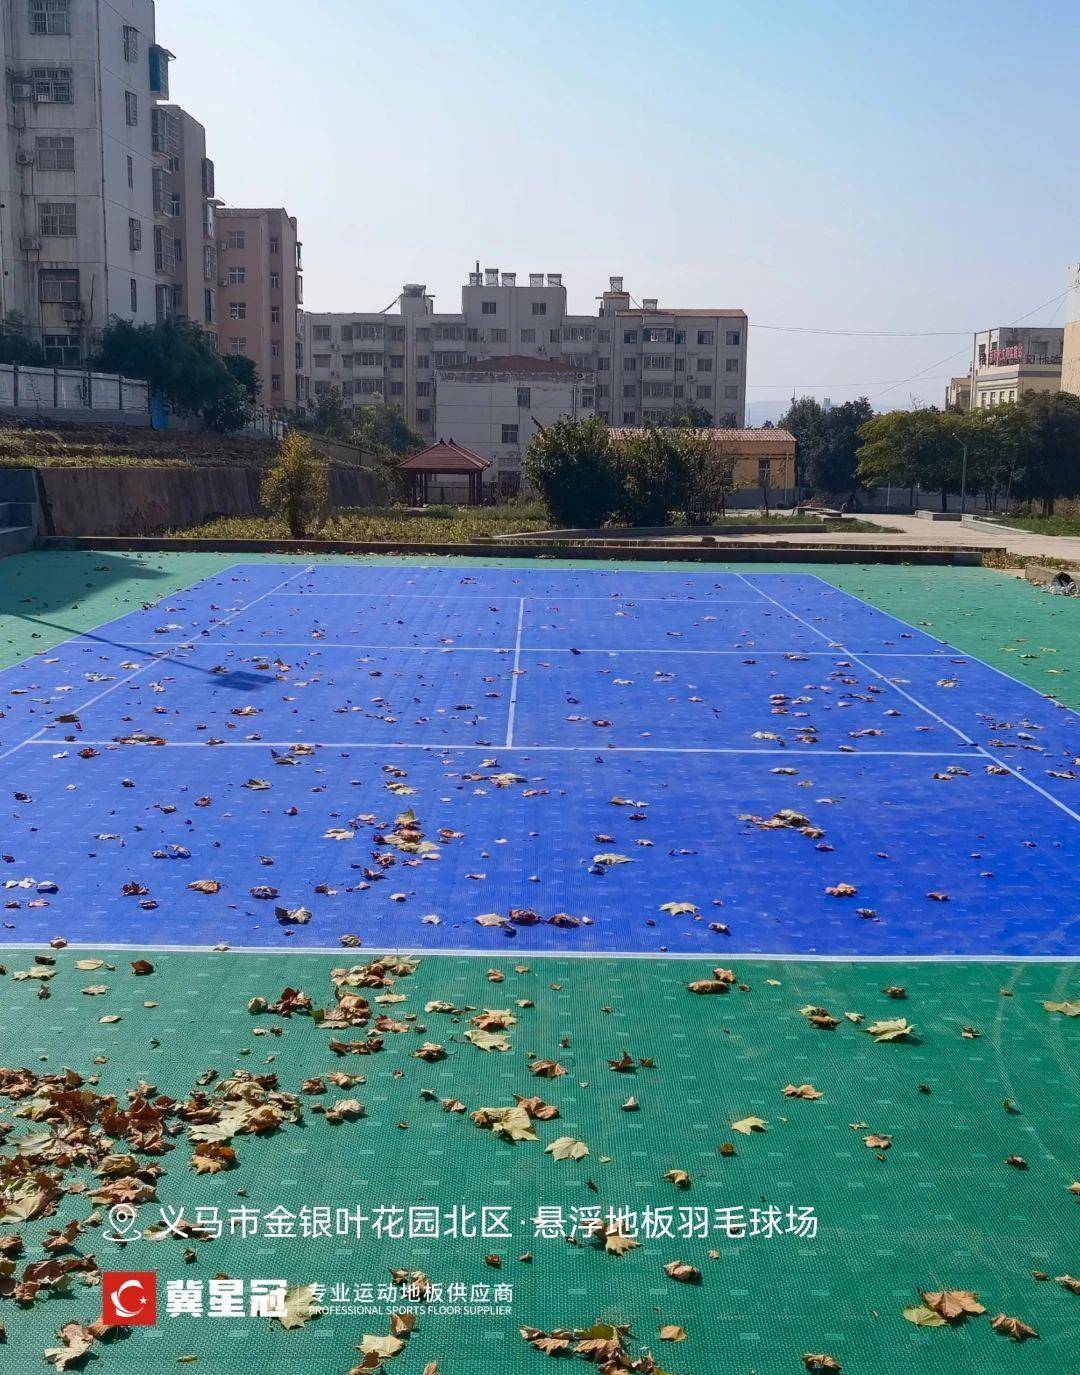 北京惊现巨型蓝色大球图片